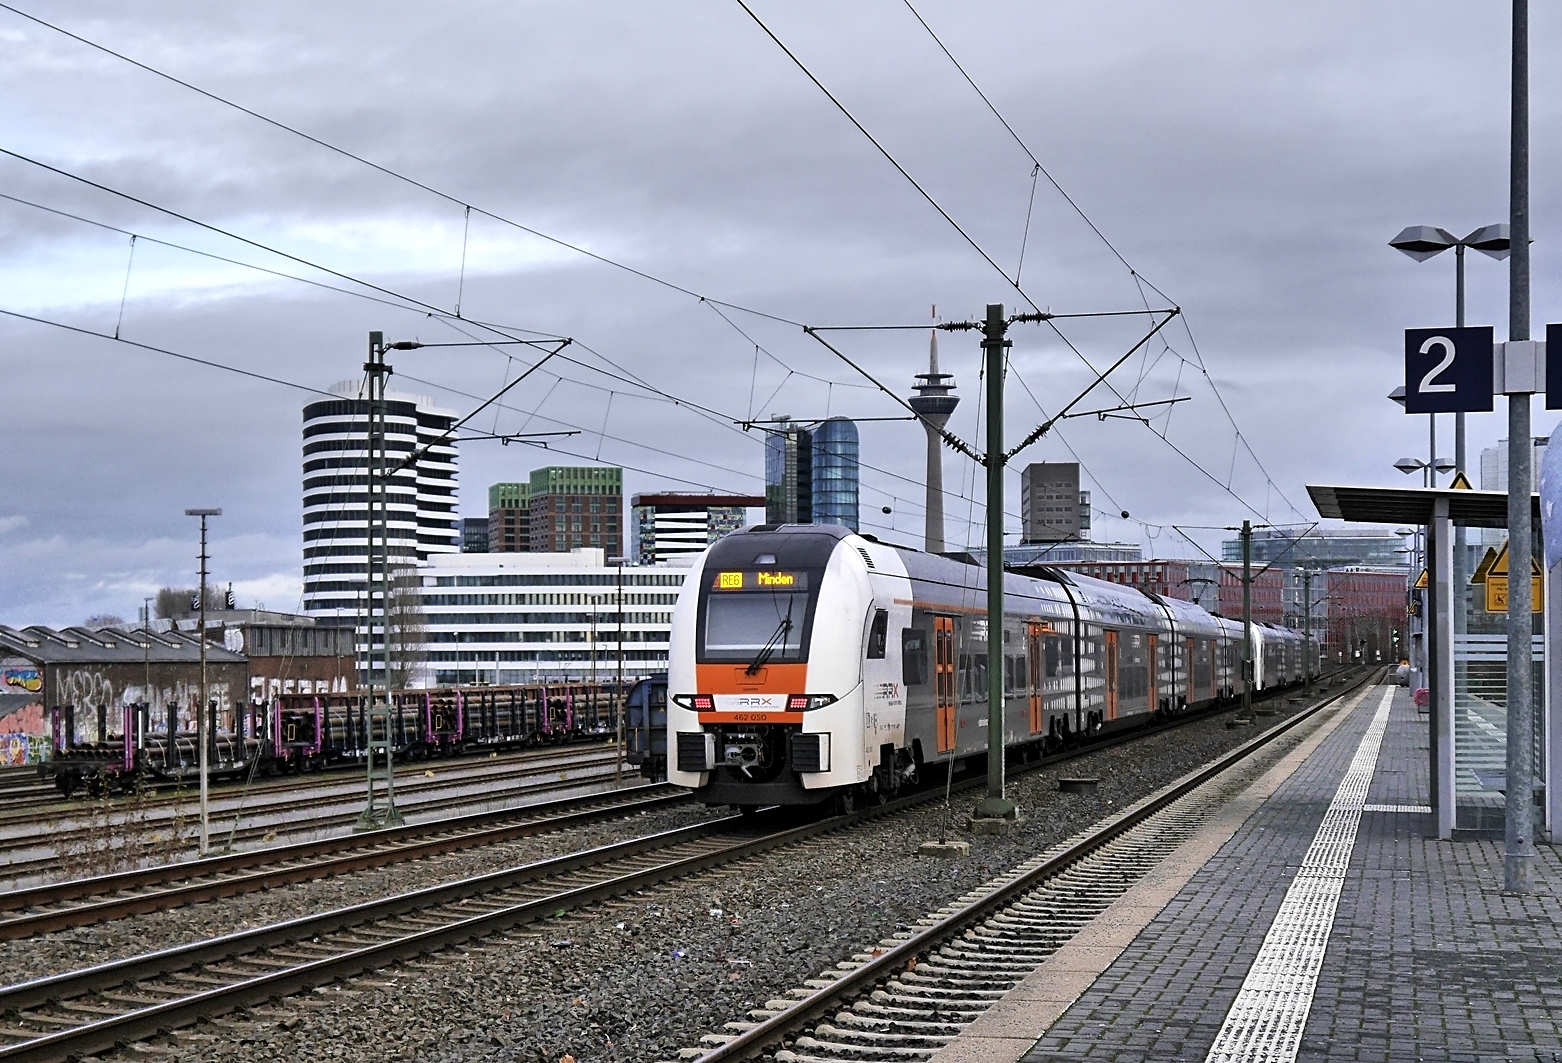 RE 6 von Köln nach Minden